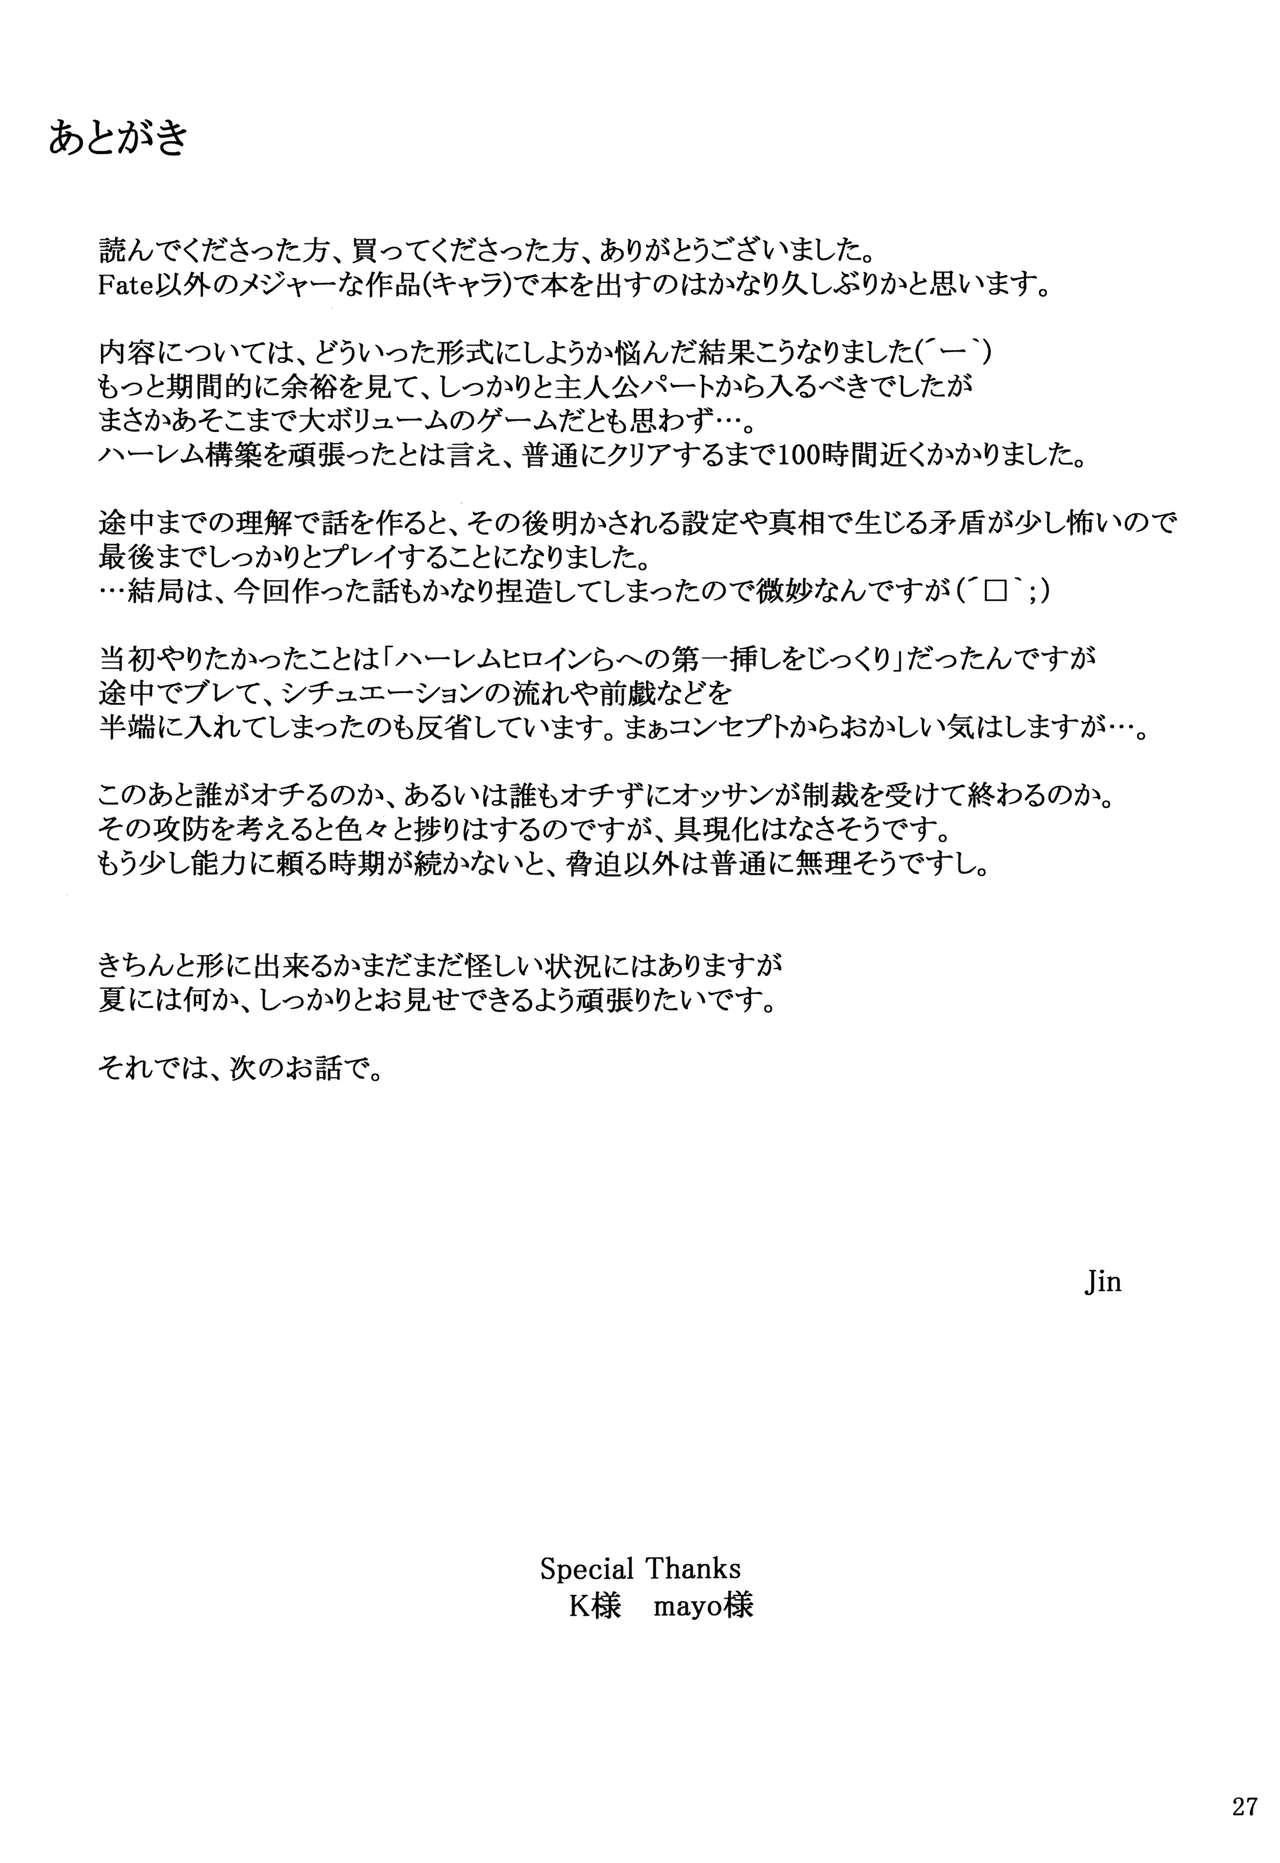 Affair Kokoro no Kaitou no Josei Jijou - Persona 5 Whatsapp - Page 26